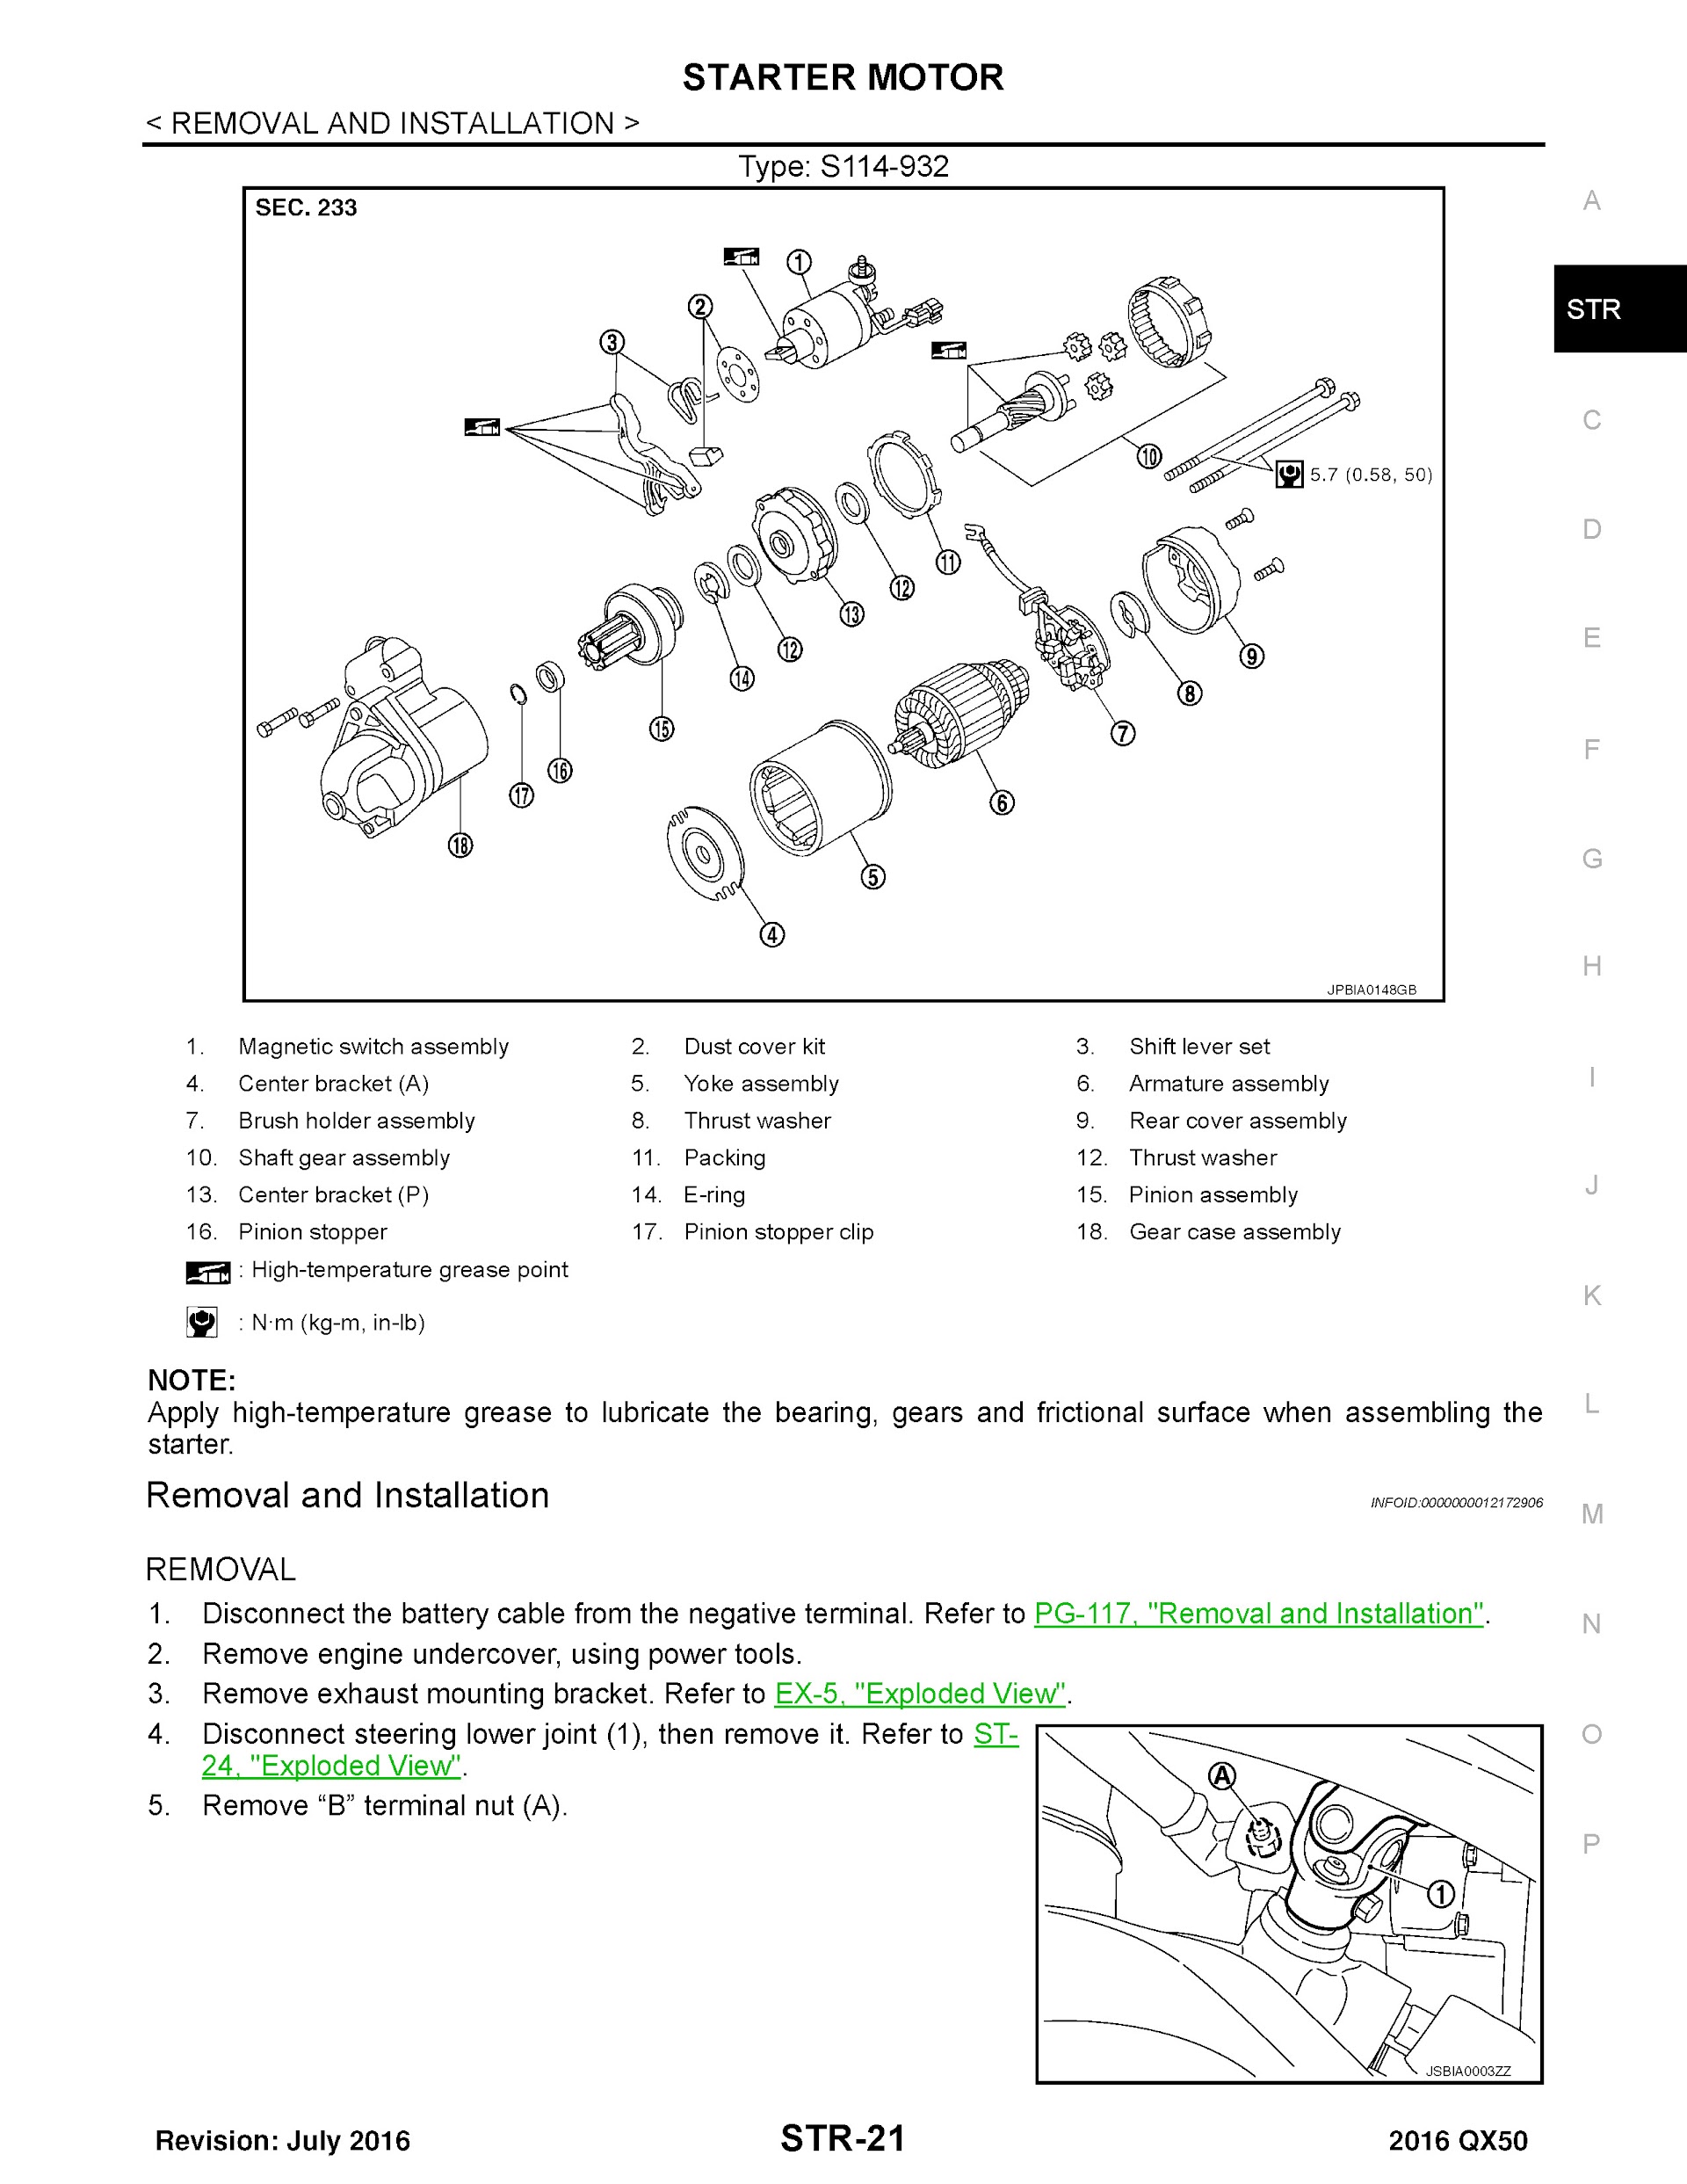 2016 Infiniti QX50 Repair Manual, Starter Motor